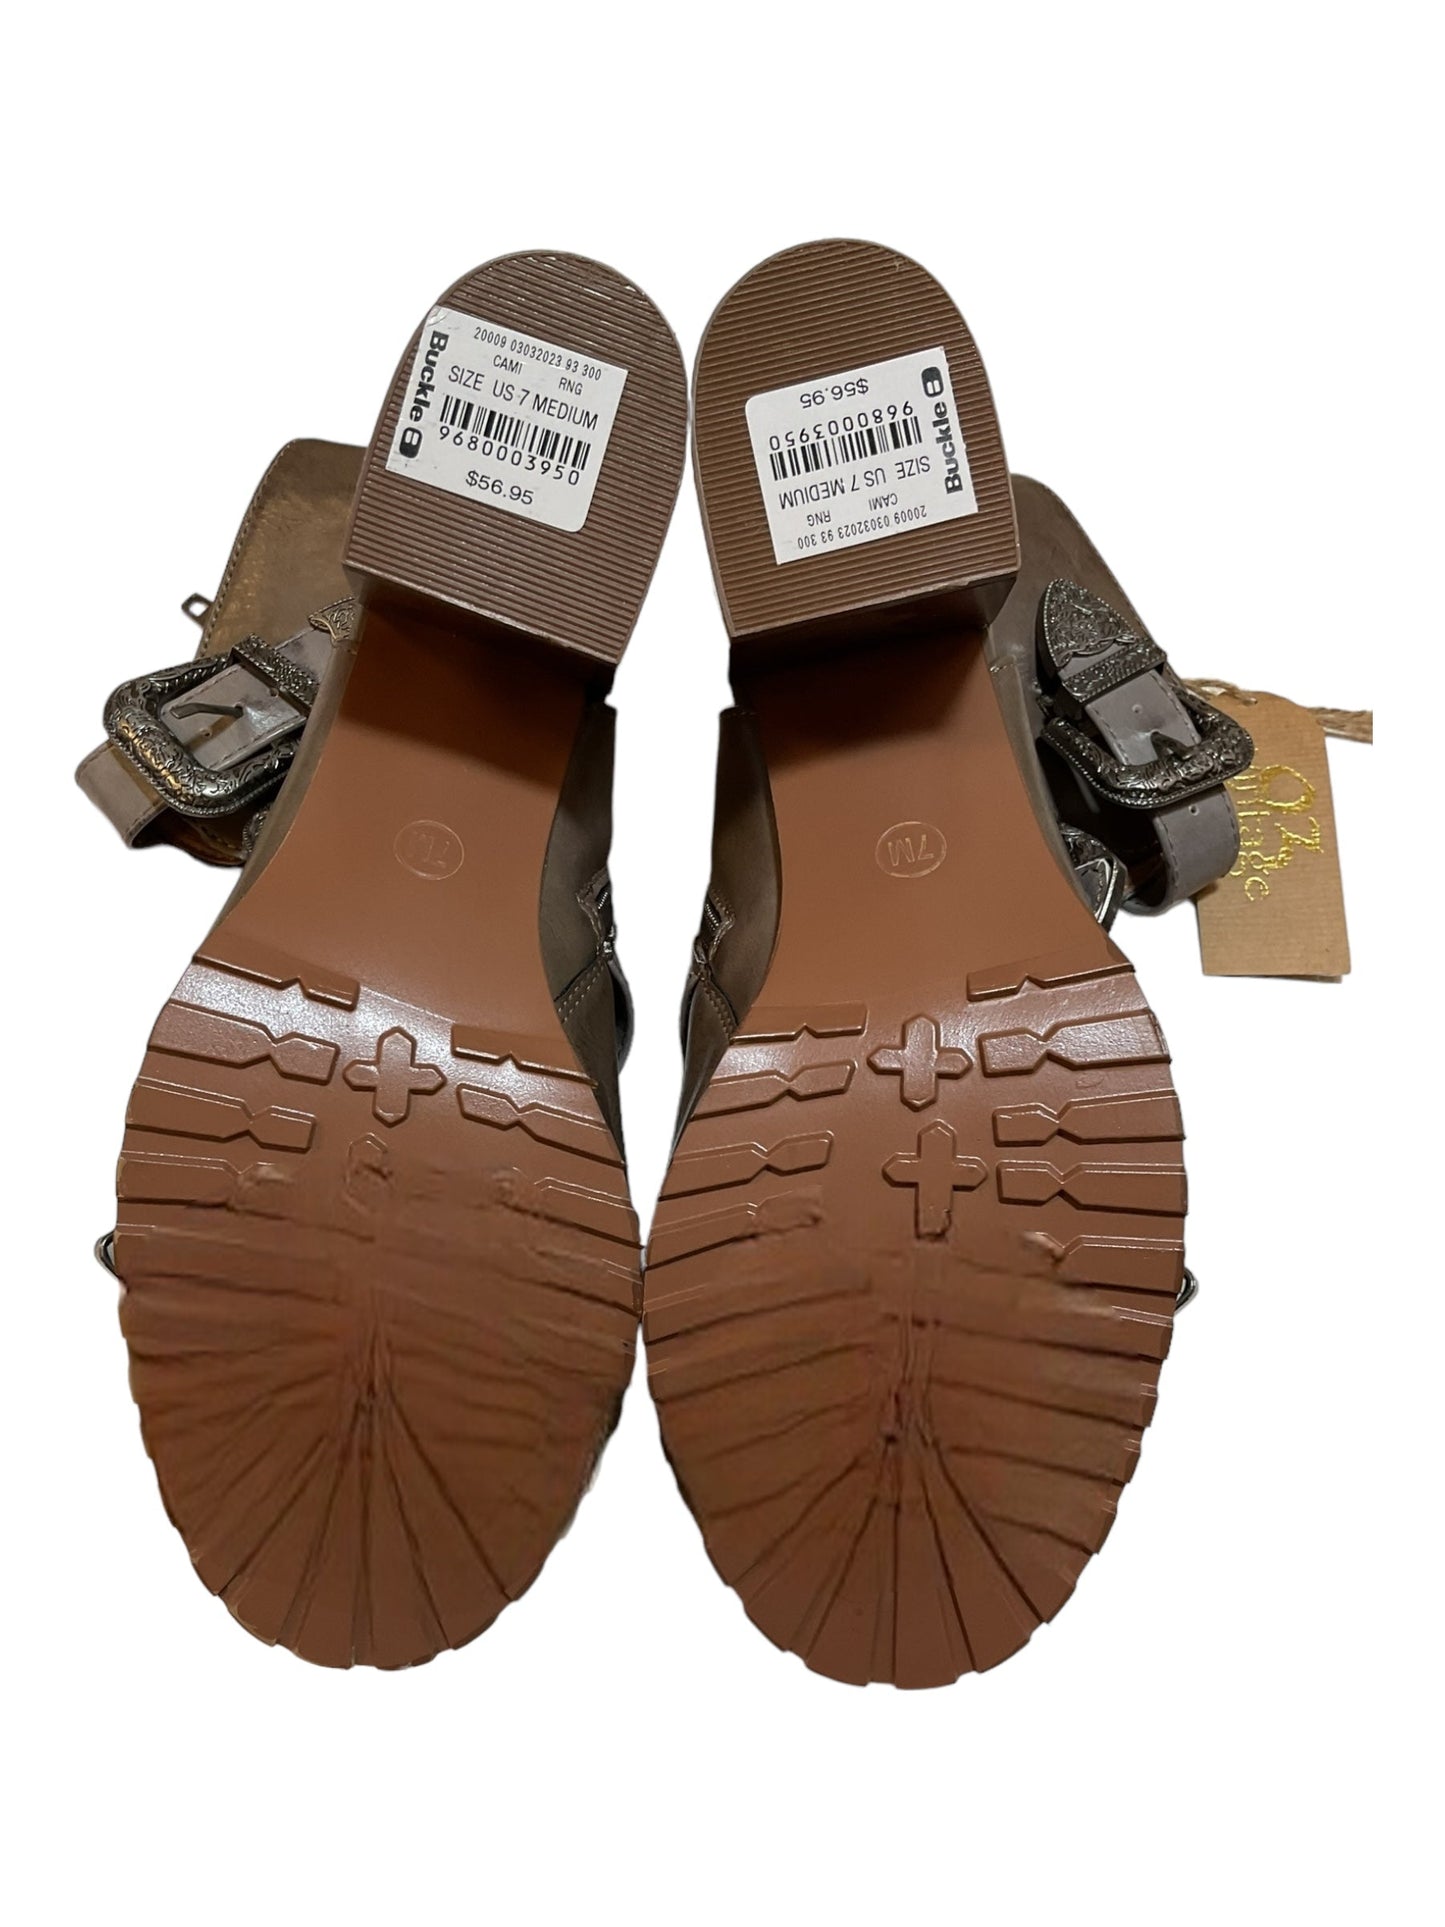 Tan Sandals Heels Block Clothes Mentor, Size 7